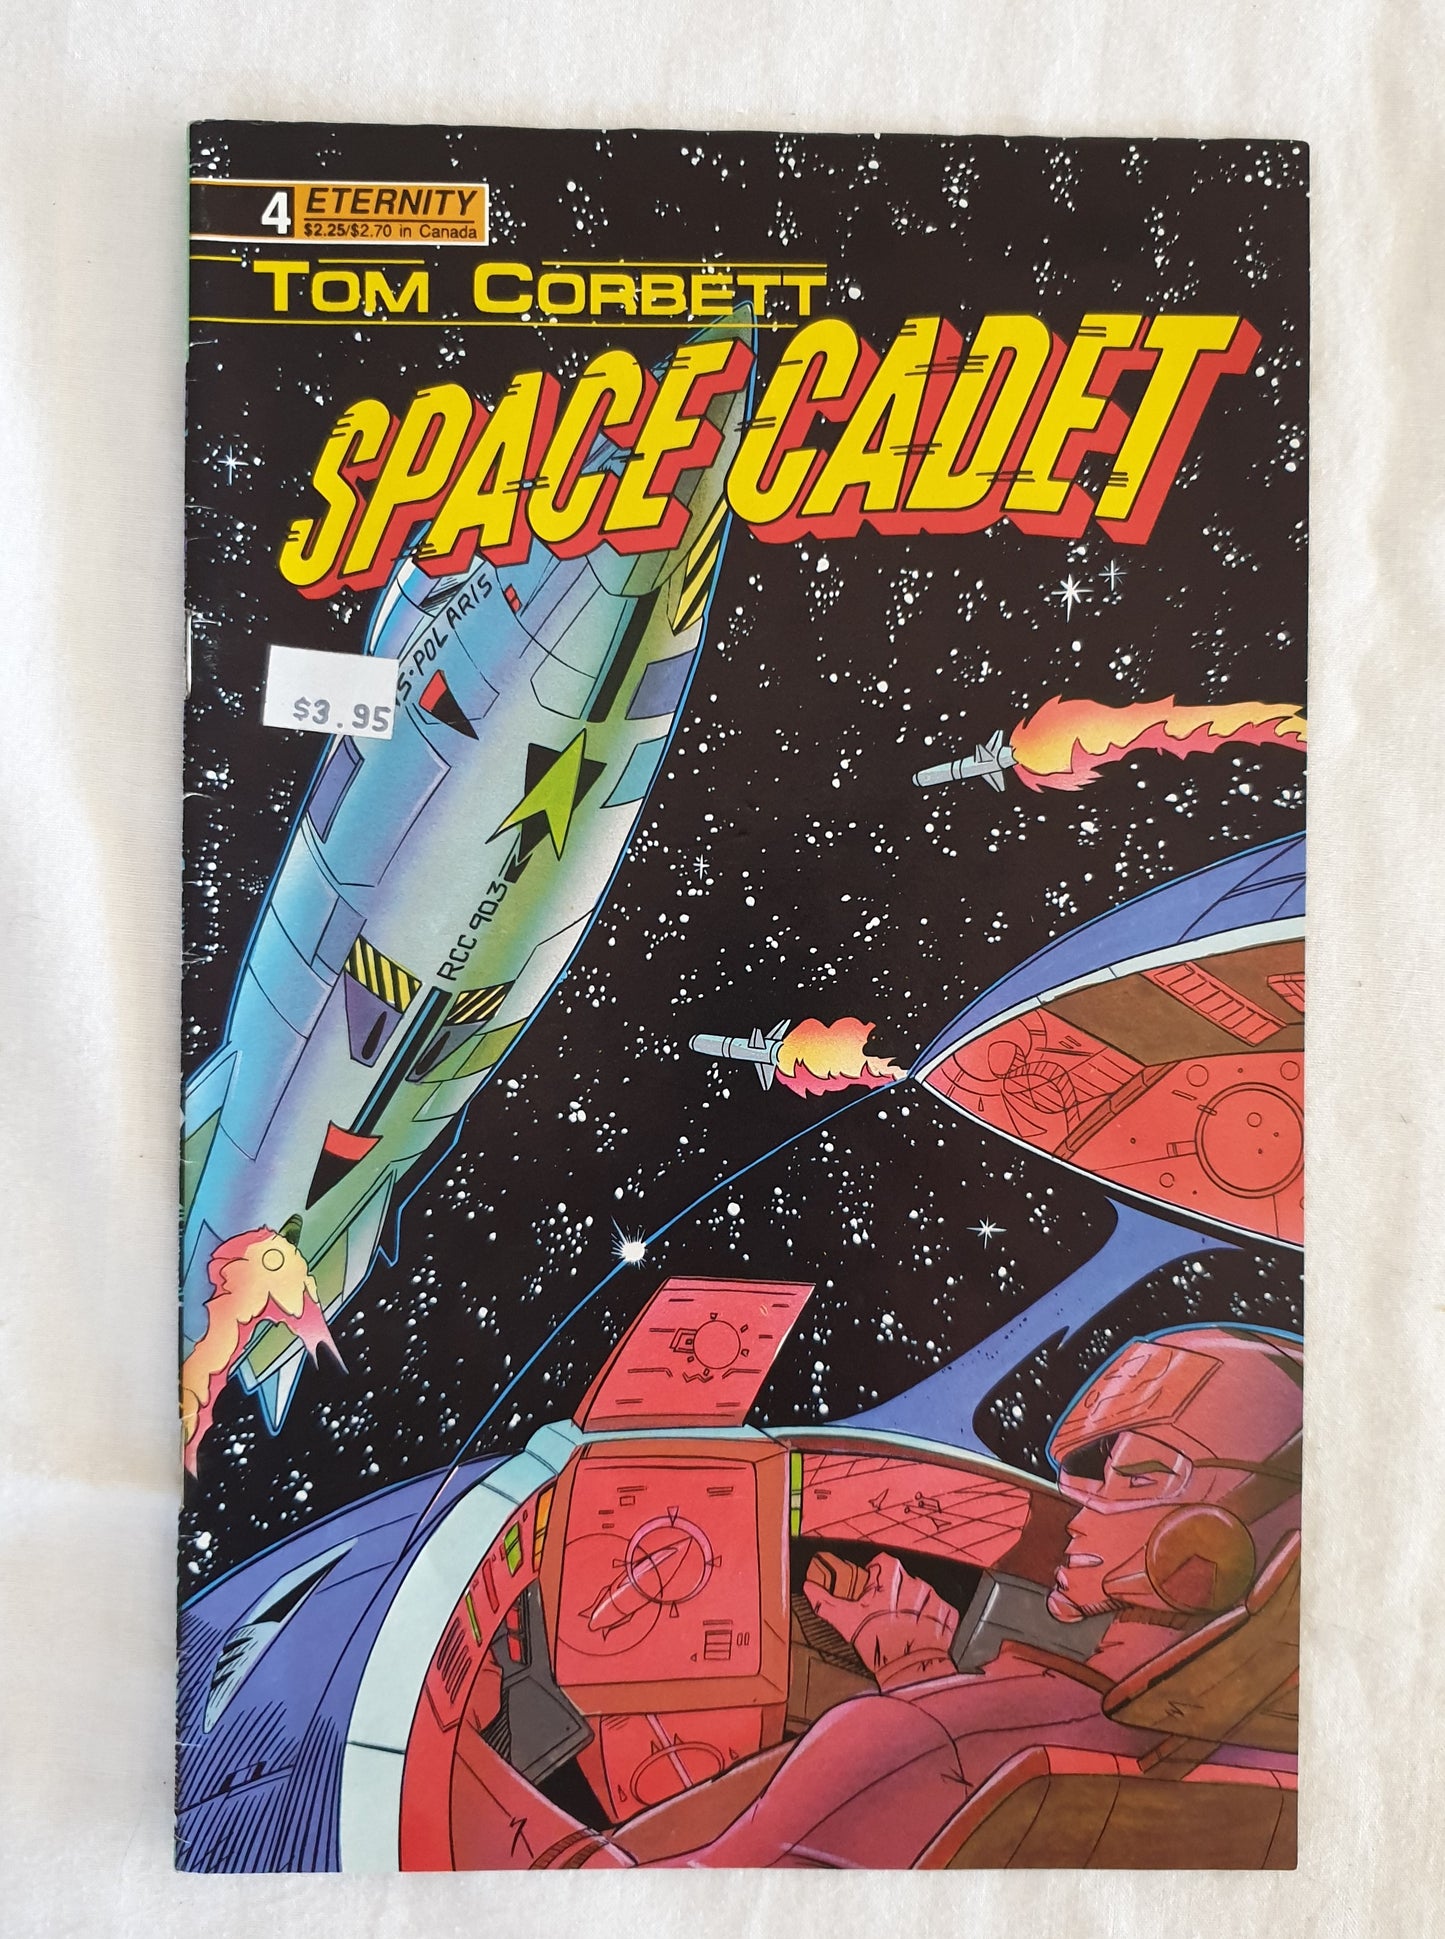 Tom Corbett Space Cadet by Bill Spangler #4